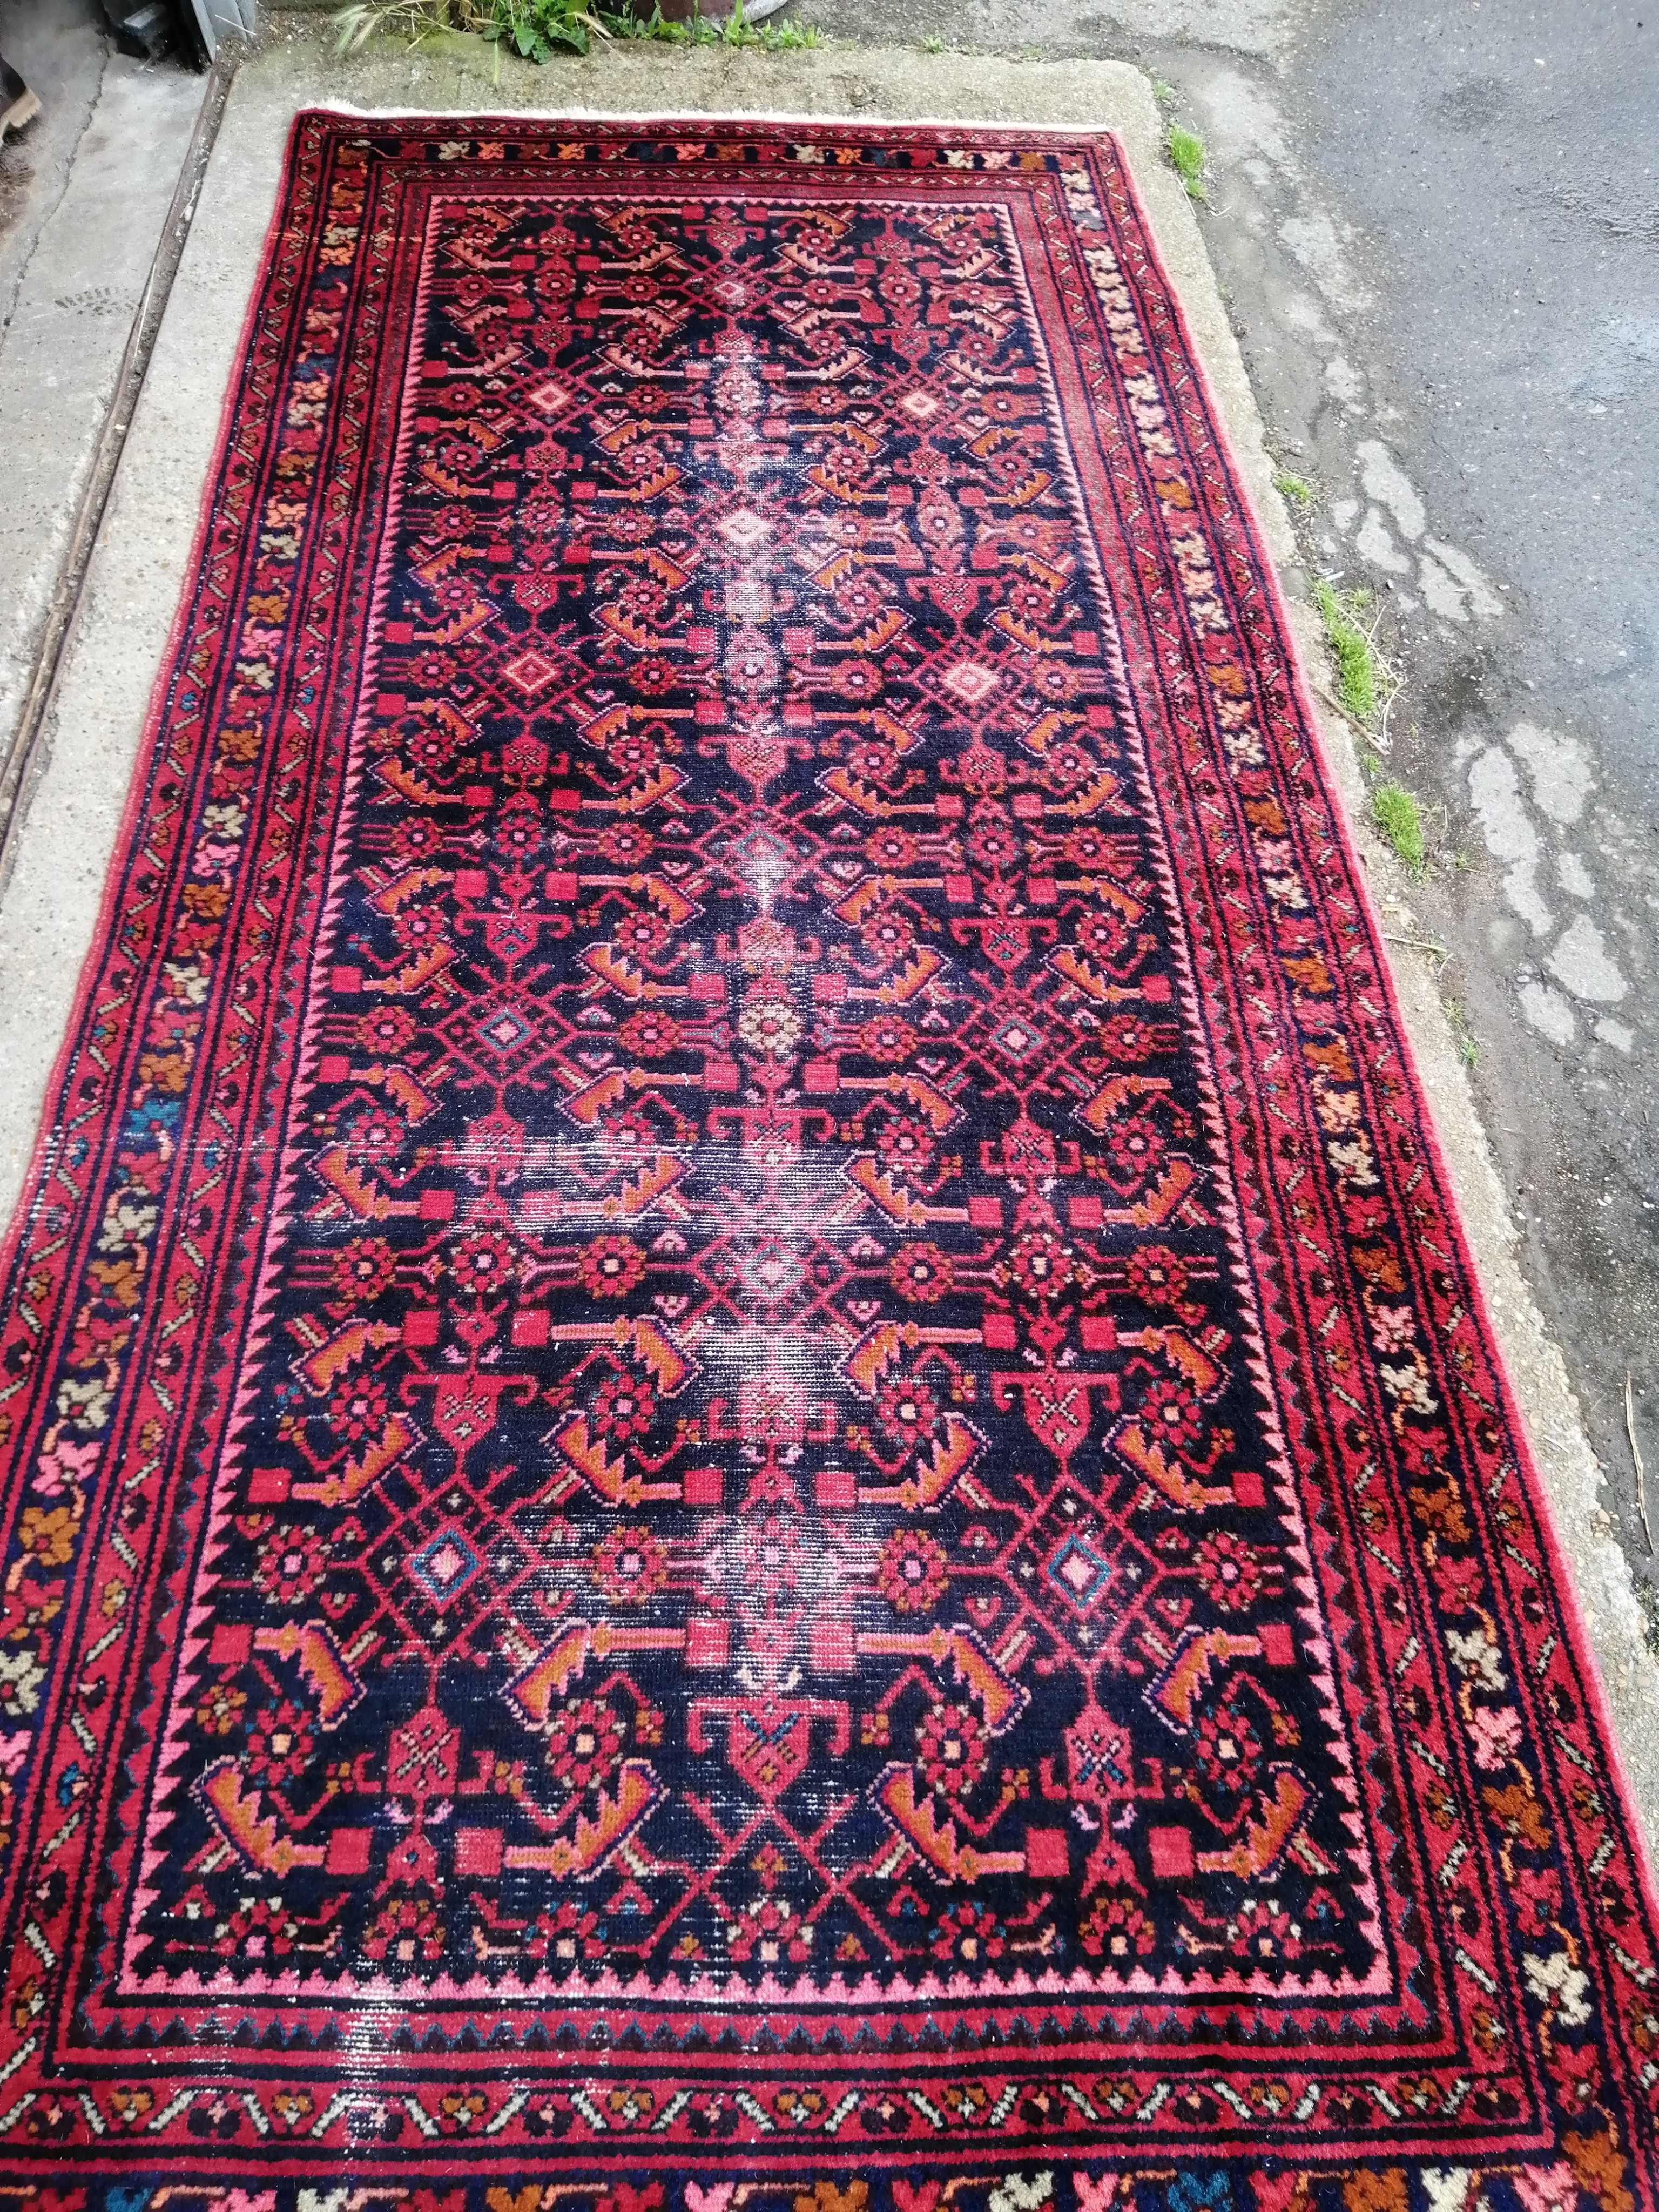 A Belouch blue ground carpet, approx. 280 x 136cm